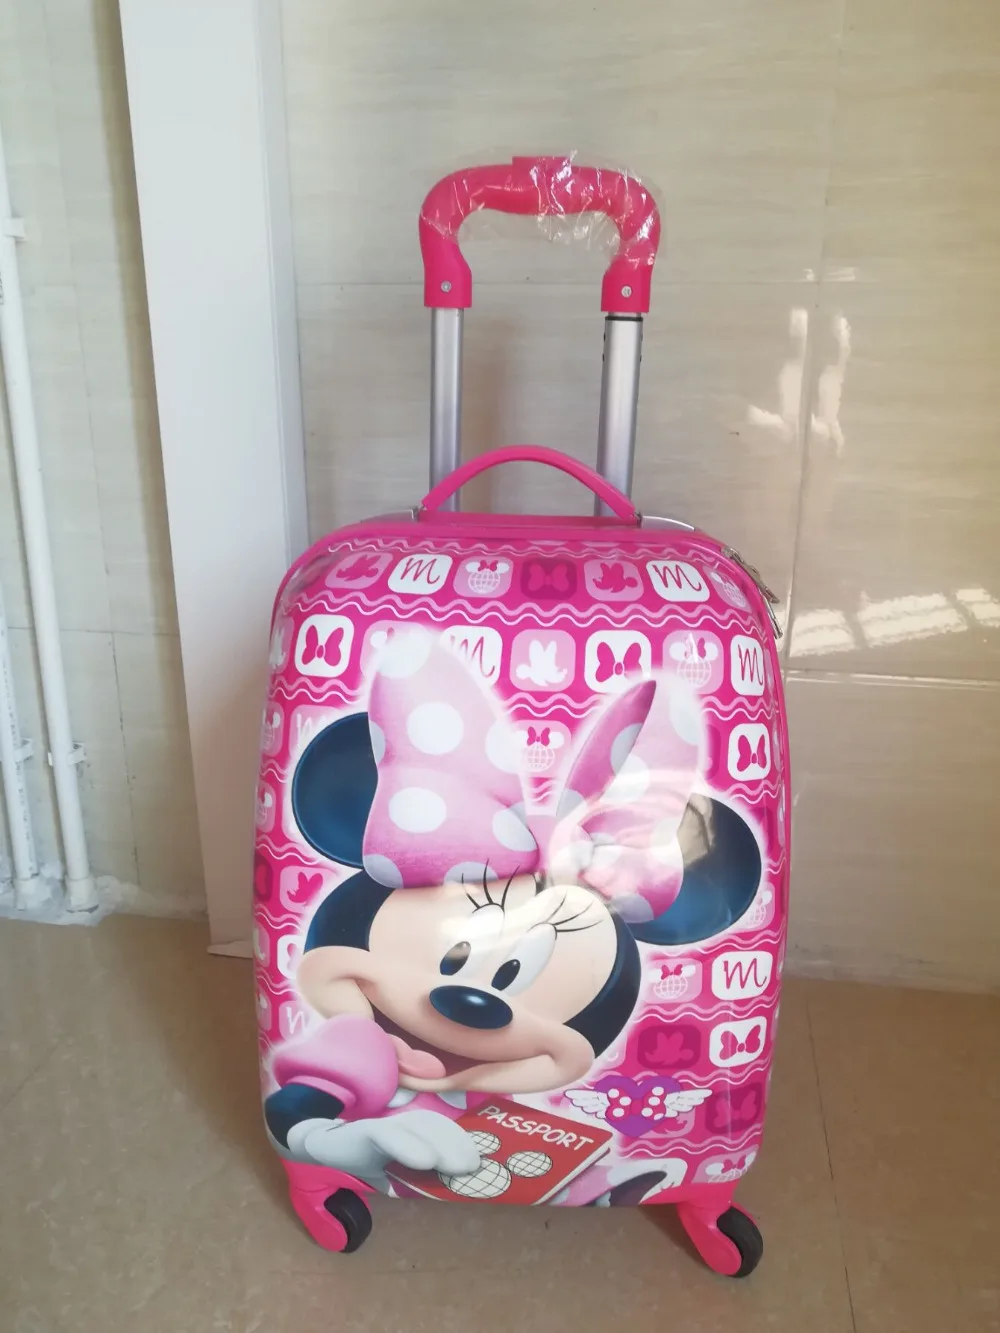 16 "18" переносной чемодан с колесиками для мальчиков и девочек ABS мультяшный Спиннер чемодан с выдвижной ручкой детская коробка с тяговым